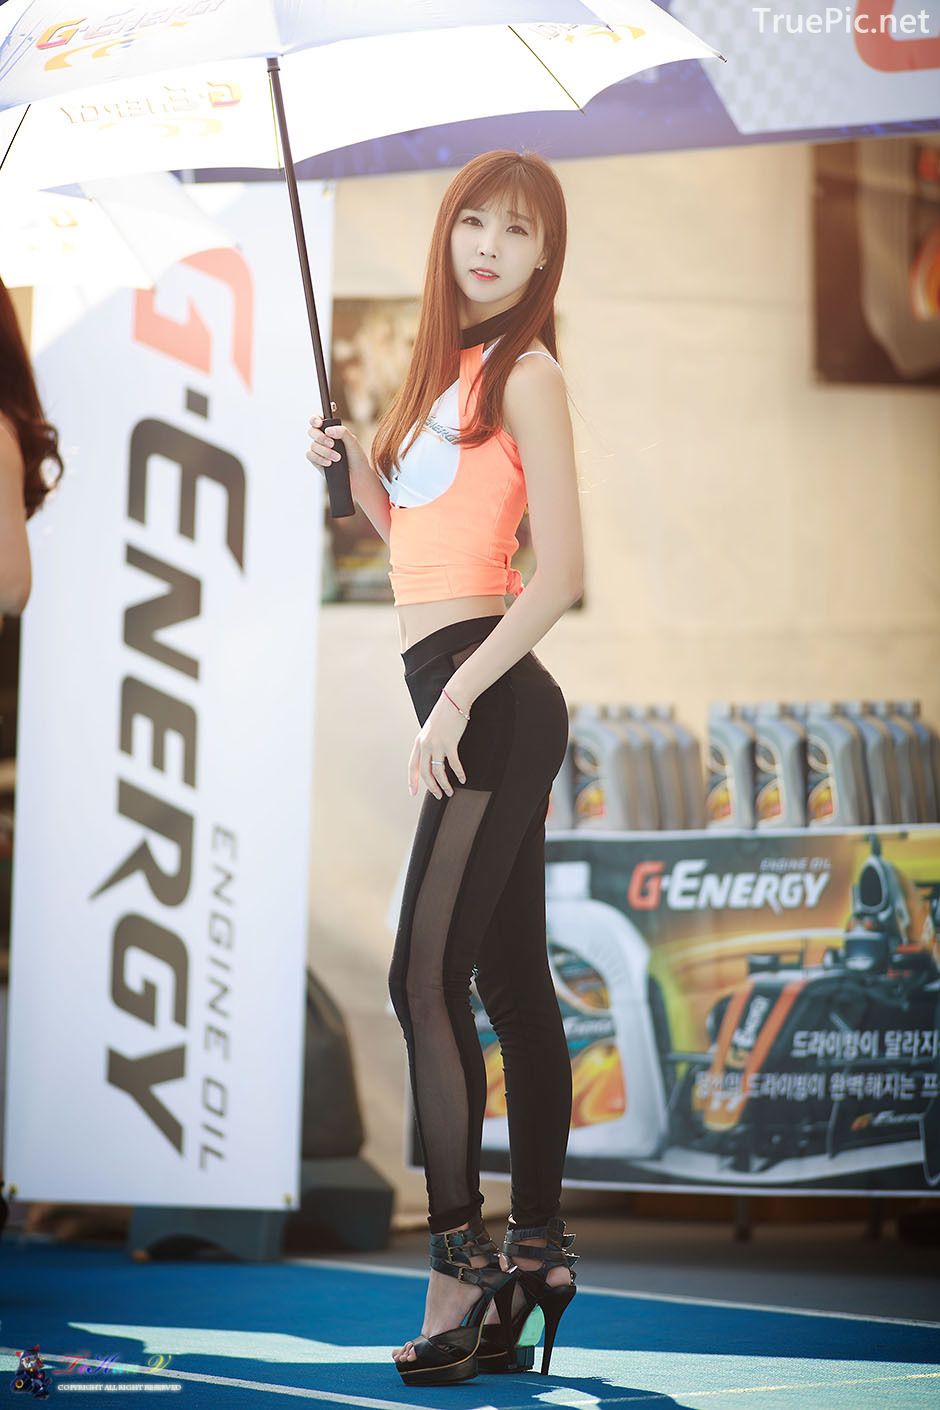 Image-Korean-Racing-Model-Lee-Yoo-Eun-Incheon-KoreaTuning-Festival-Show-TruePic.net- Picture-53